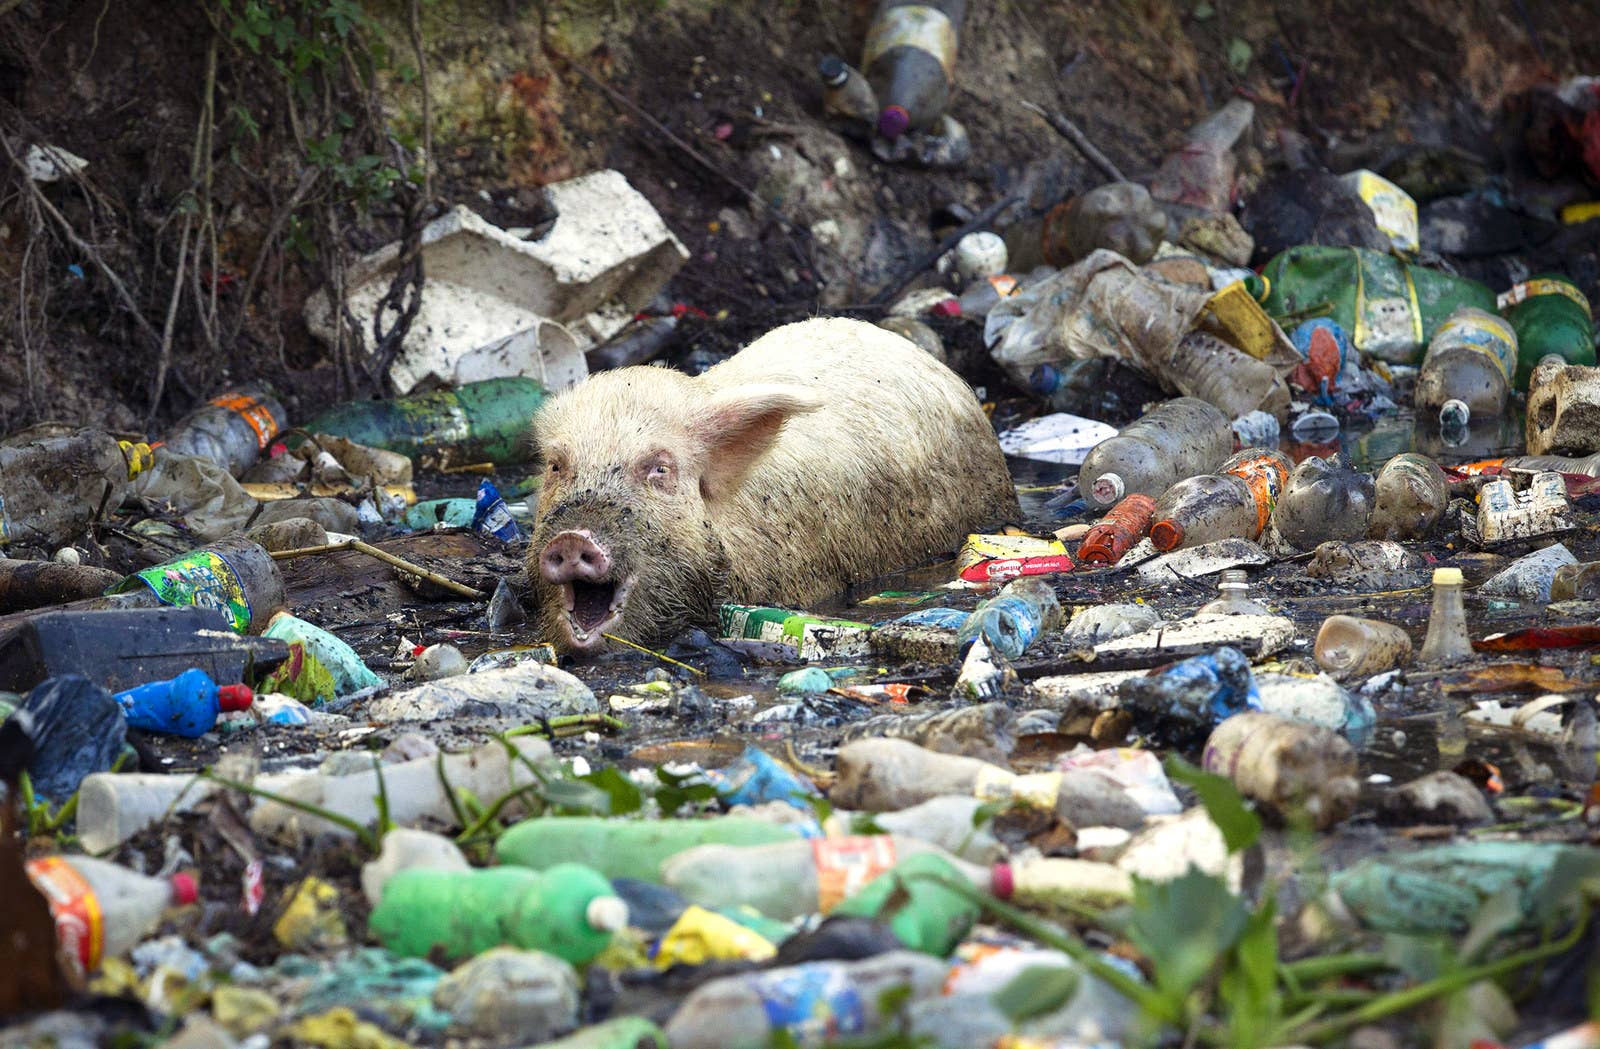 ブラジル・リオデジャネイロのゴミで溢れる沼で餌を探す豚。(2012年6月15日)